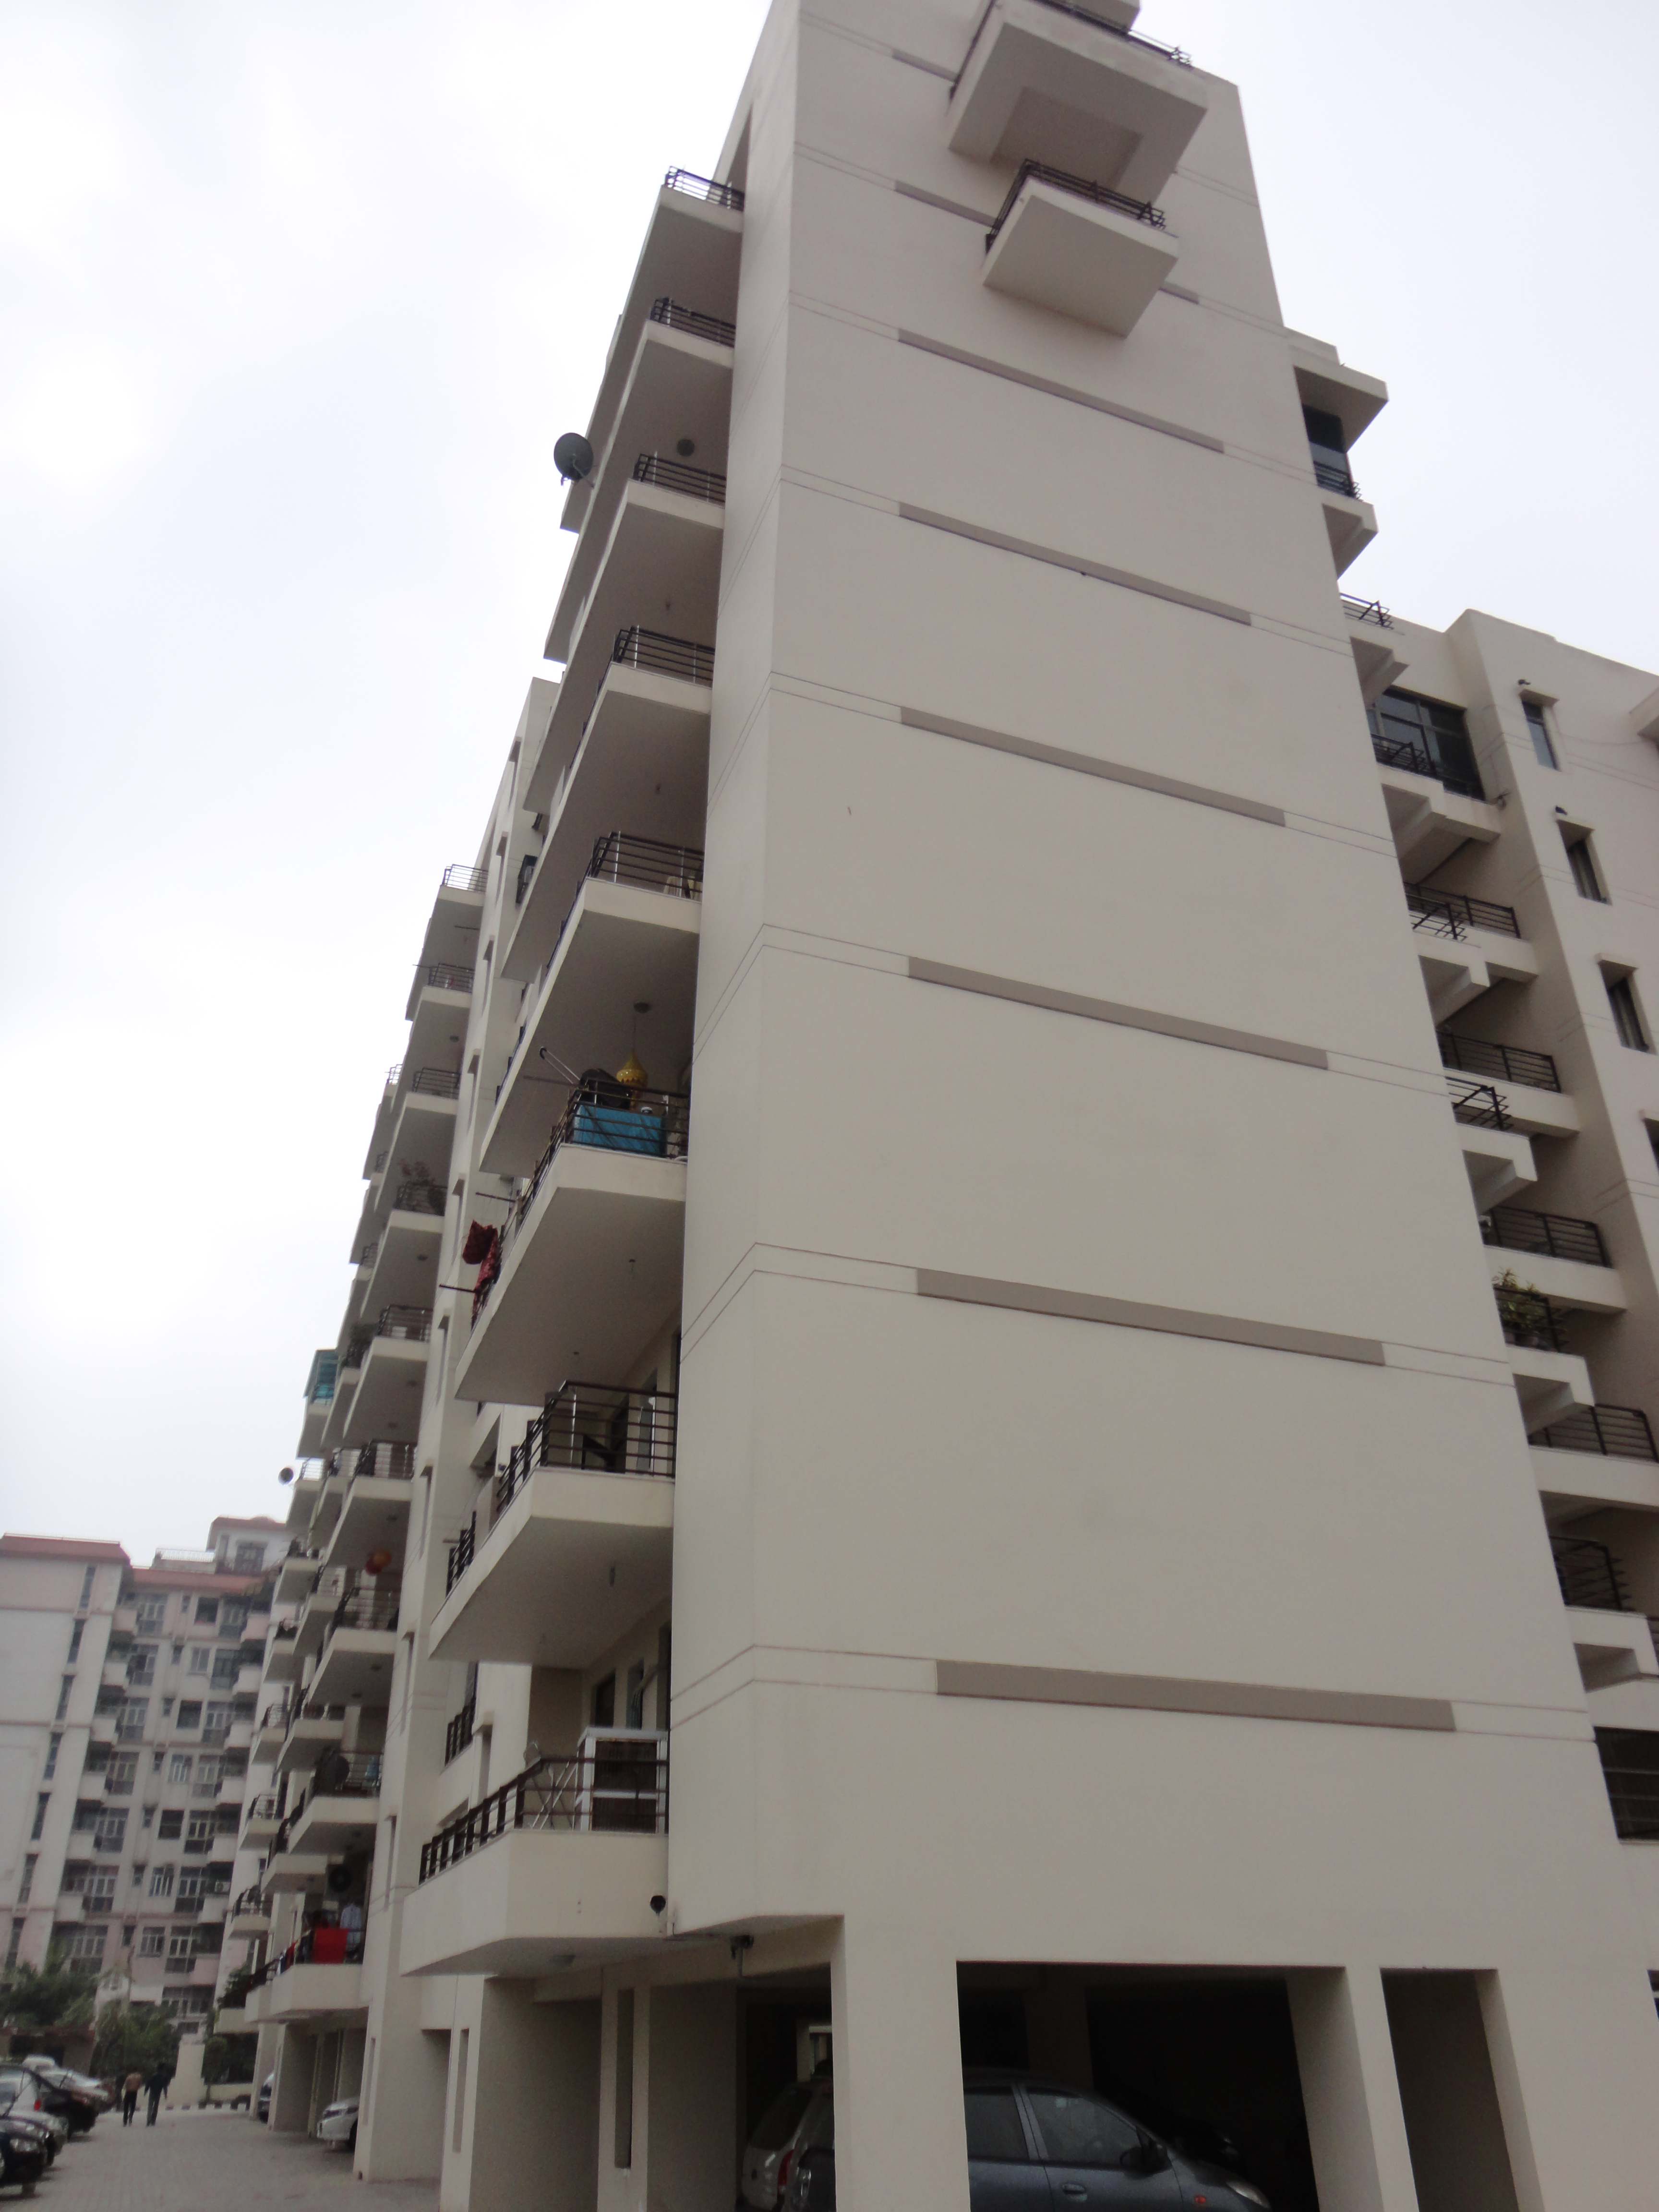 Shri Kirti Apartments CGHS Brochure Pdf Image